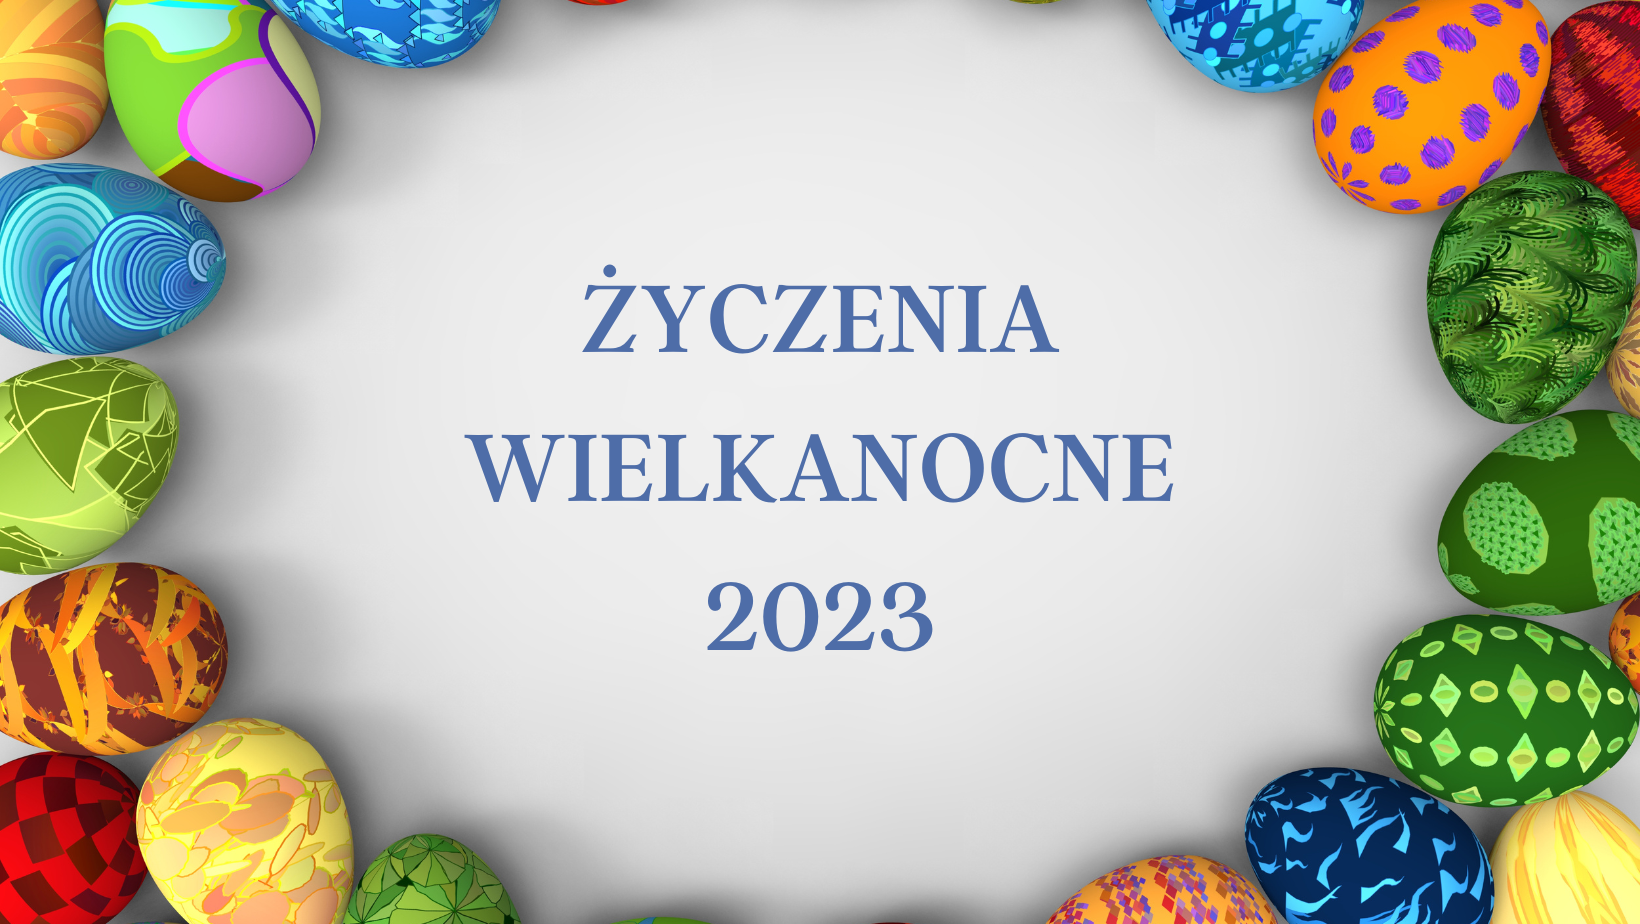 You are currently viewing Życzenia wielkanocne 2023